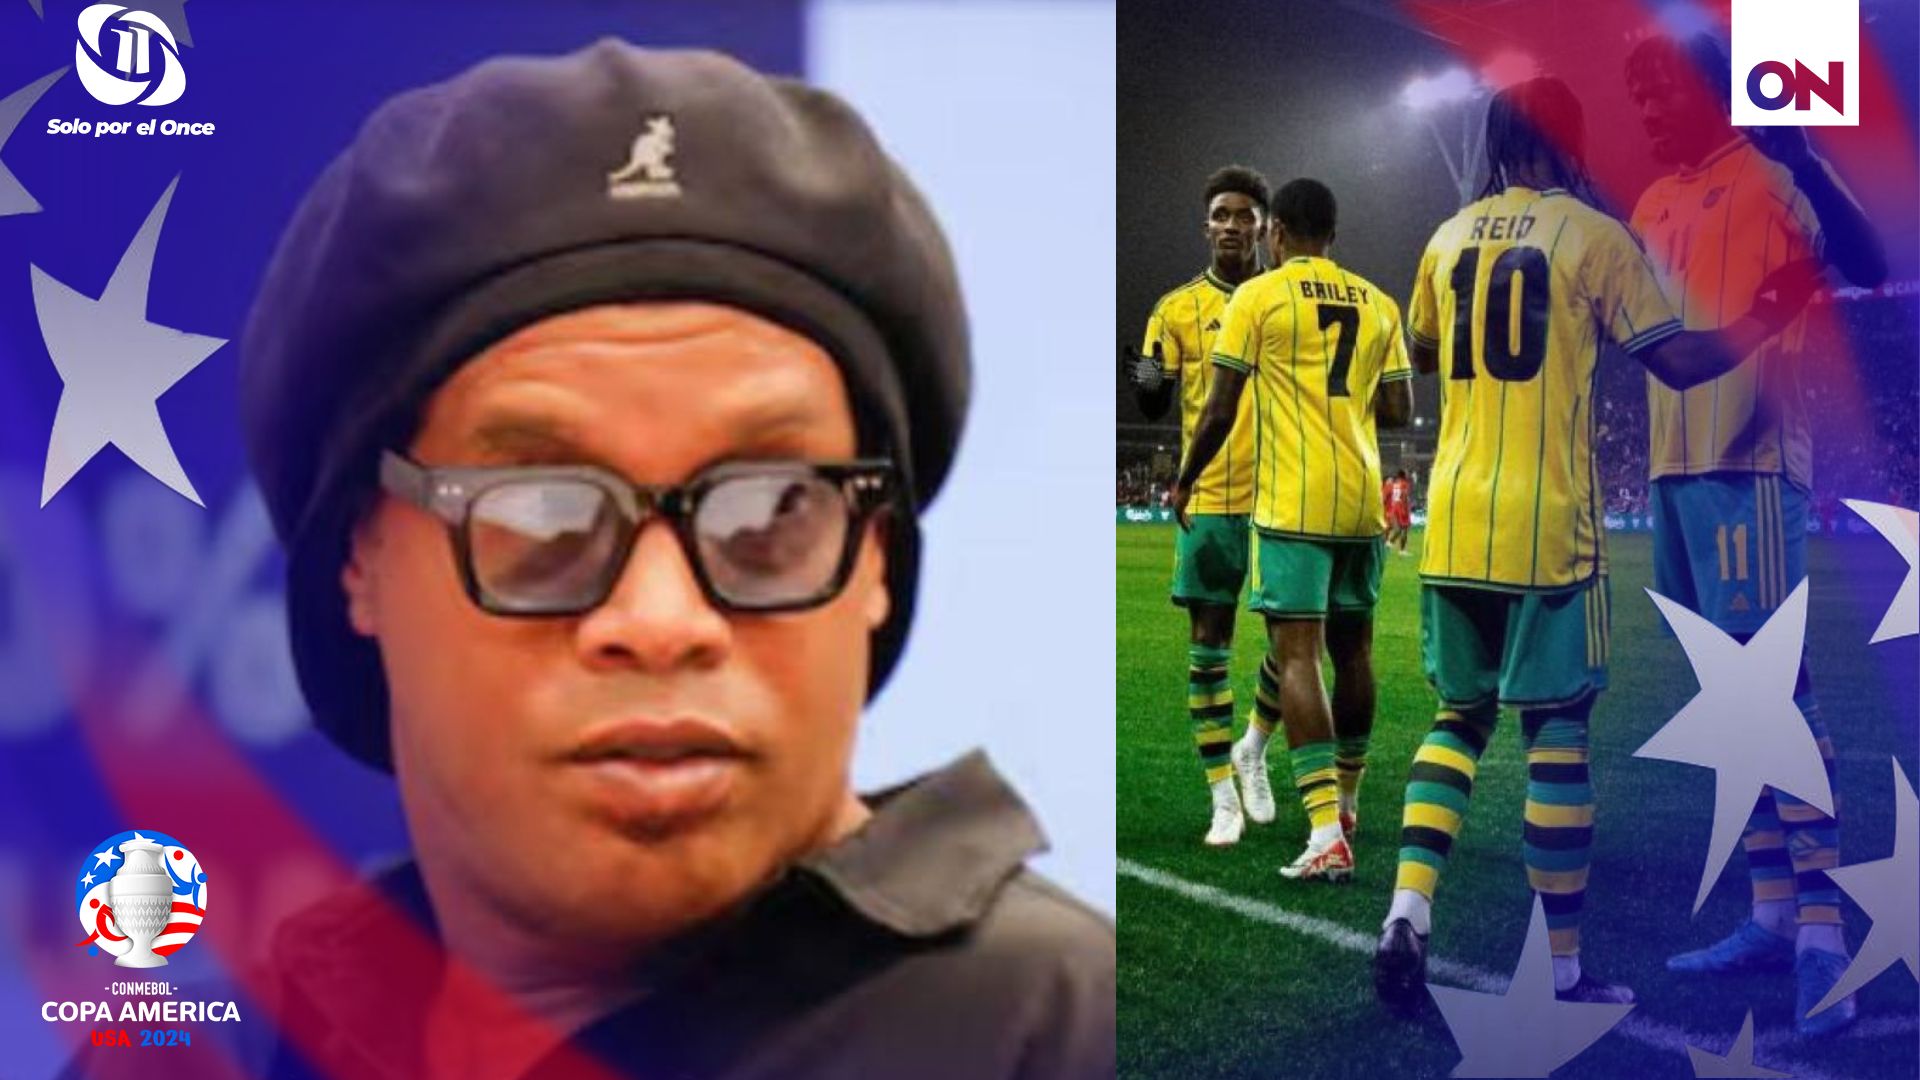 “Es uno de los peores equipos en los últimos años”, dijo Ronaldinho.